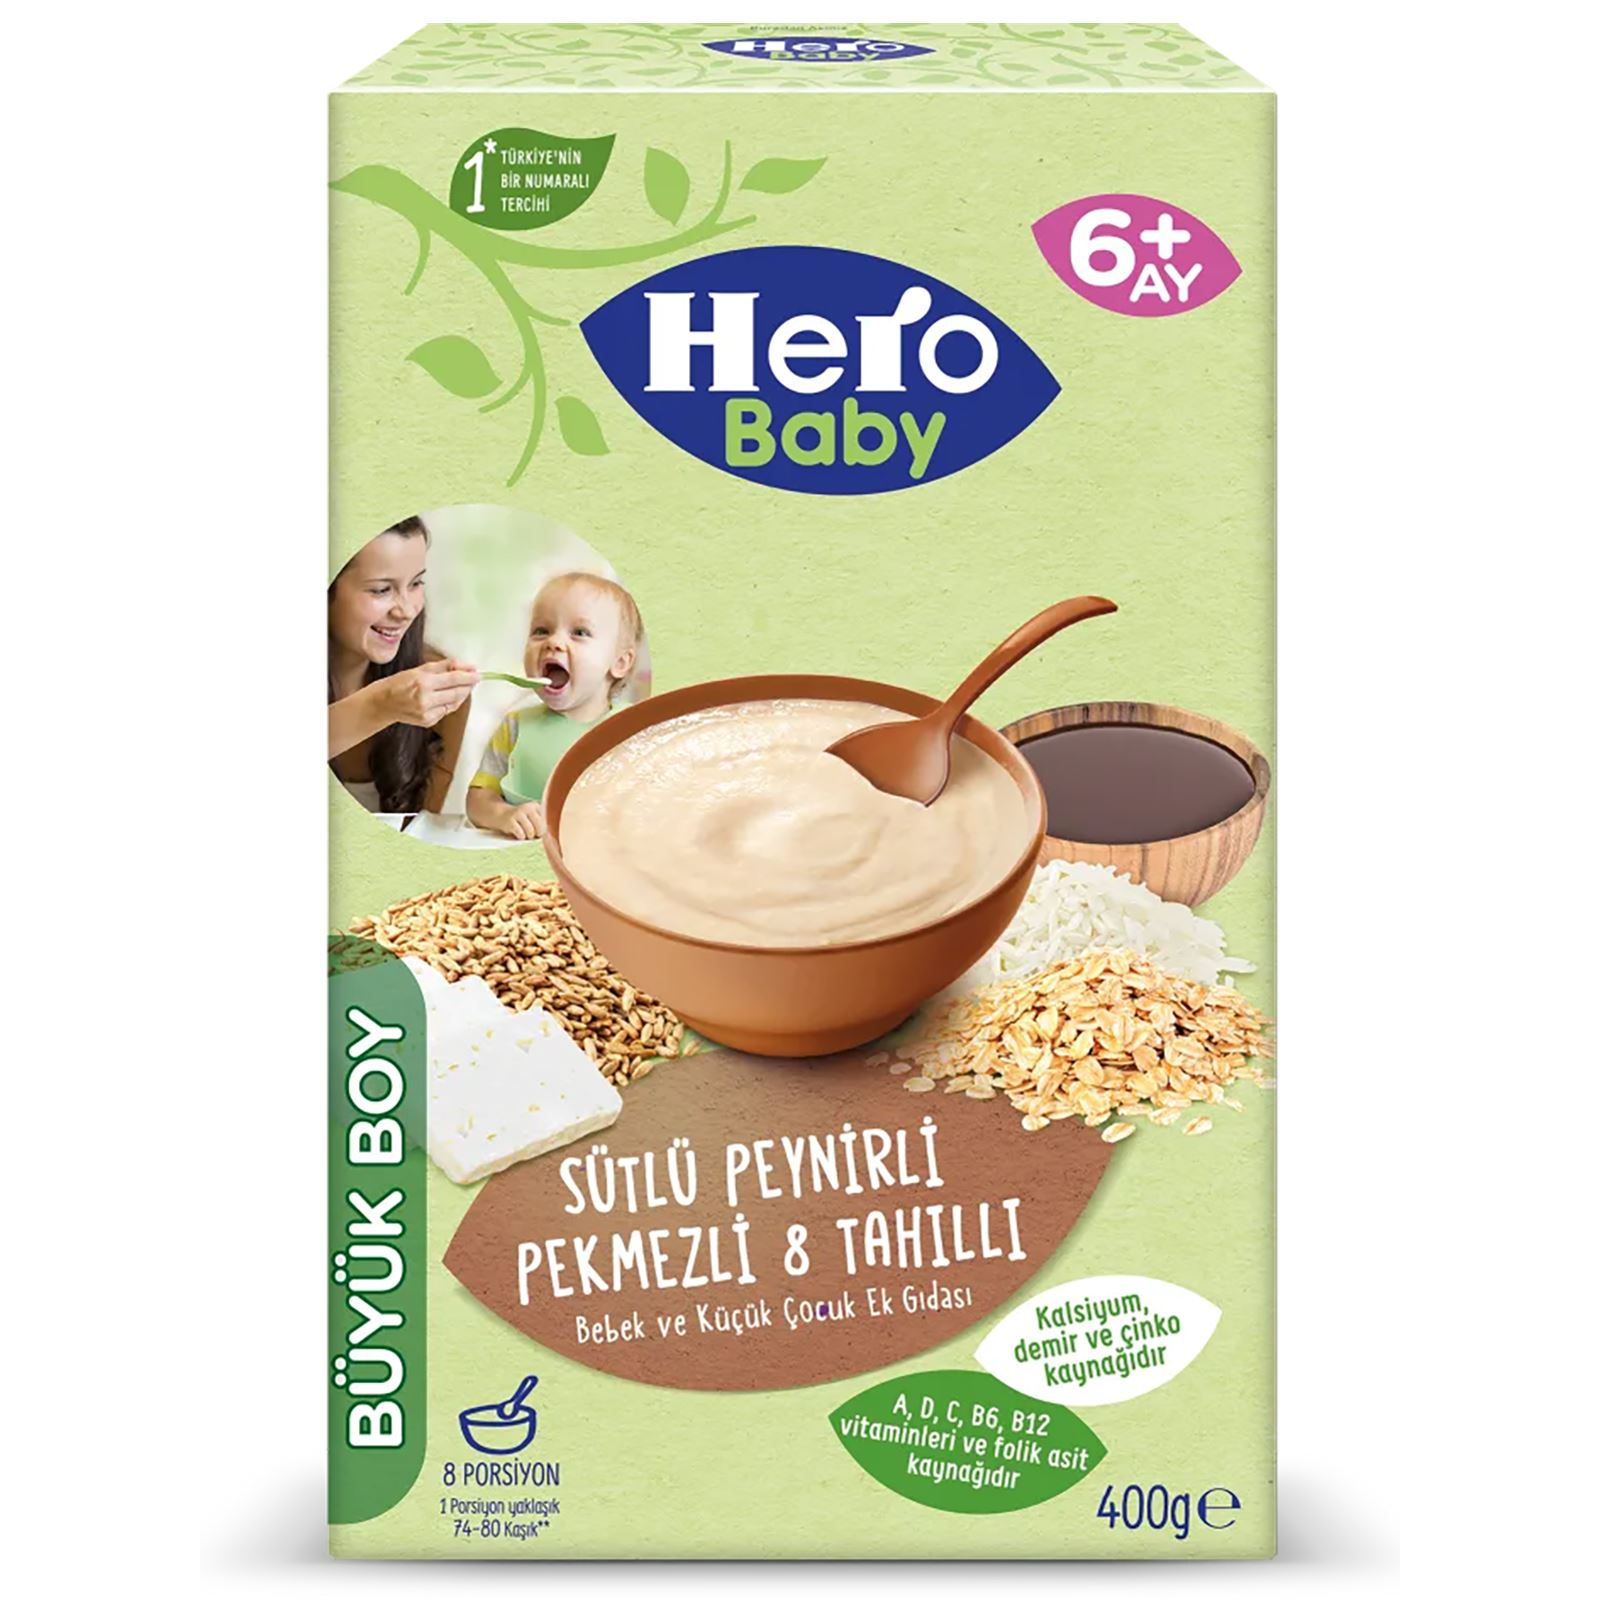 Hero Baby Sütlü Peynirli Pekmezli 8 Tahıllı Ekonomik Paket 400 gr